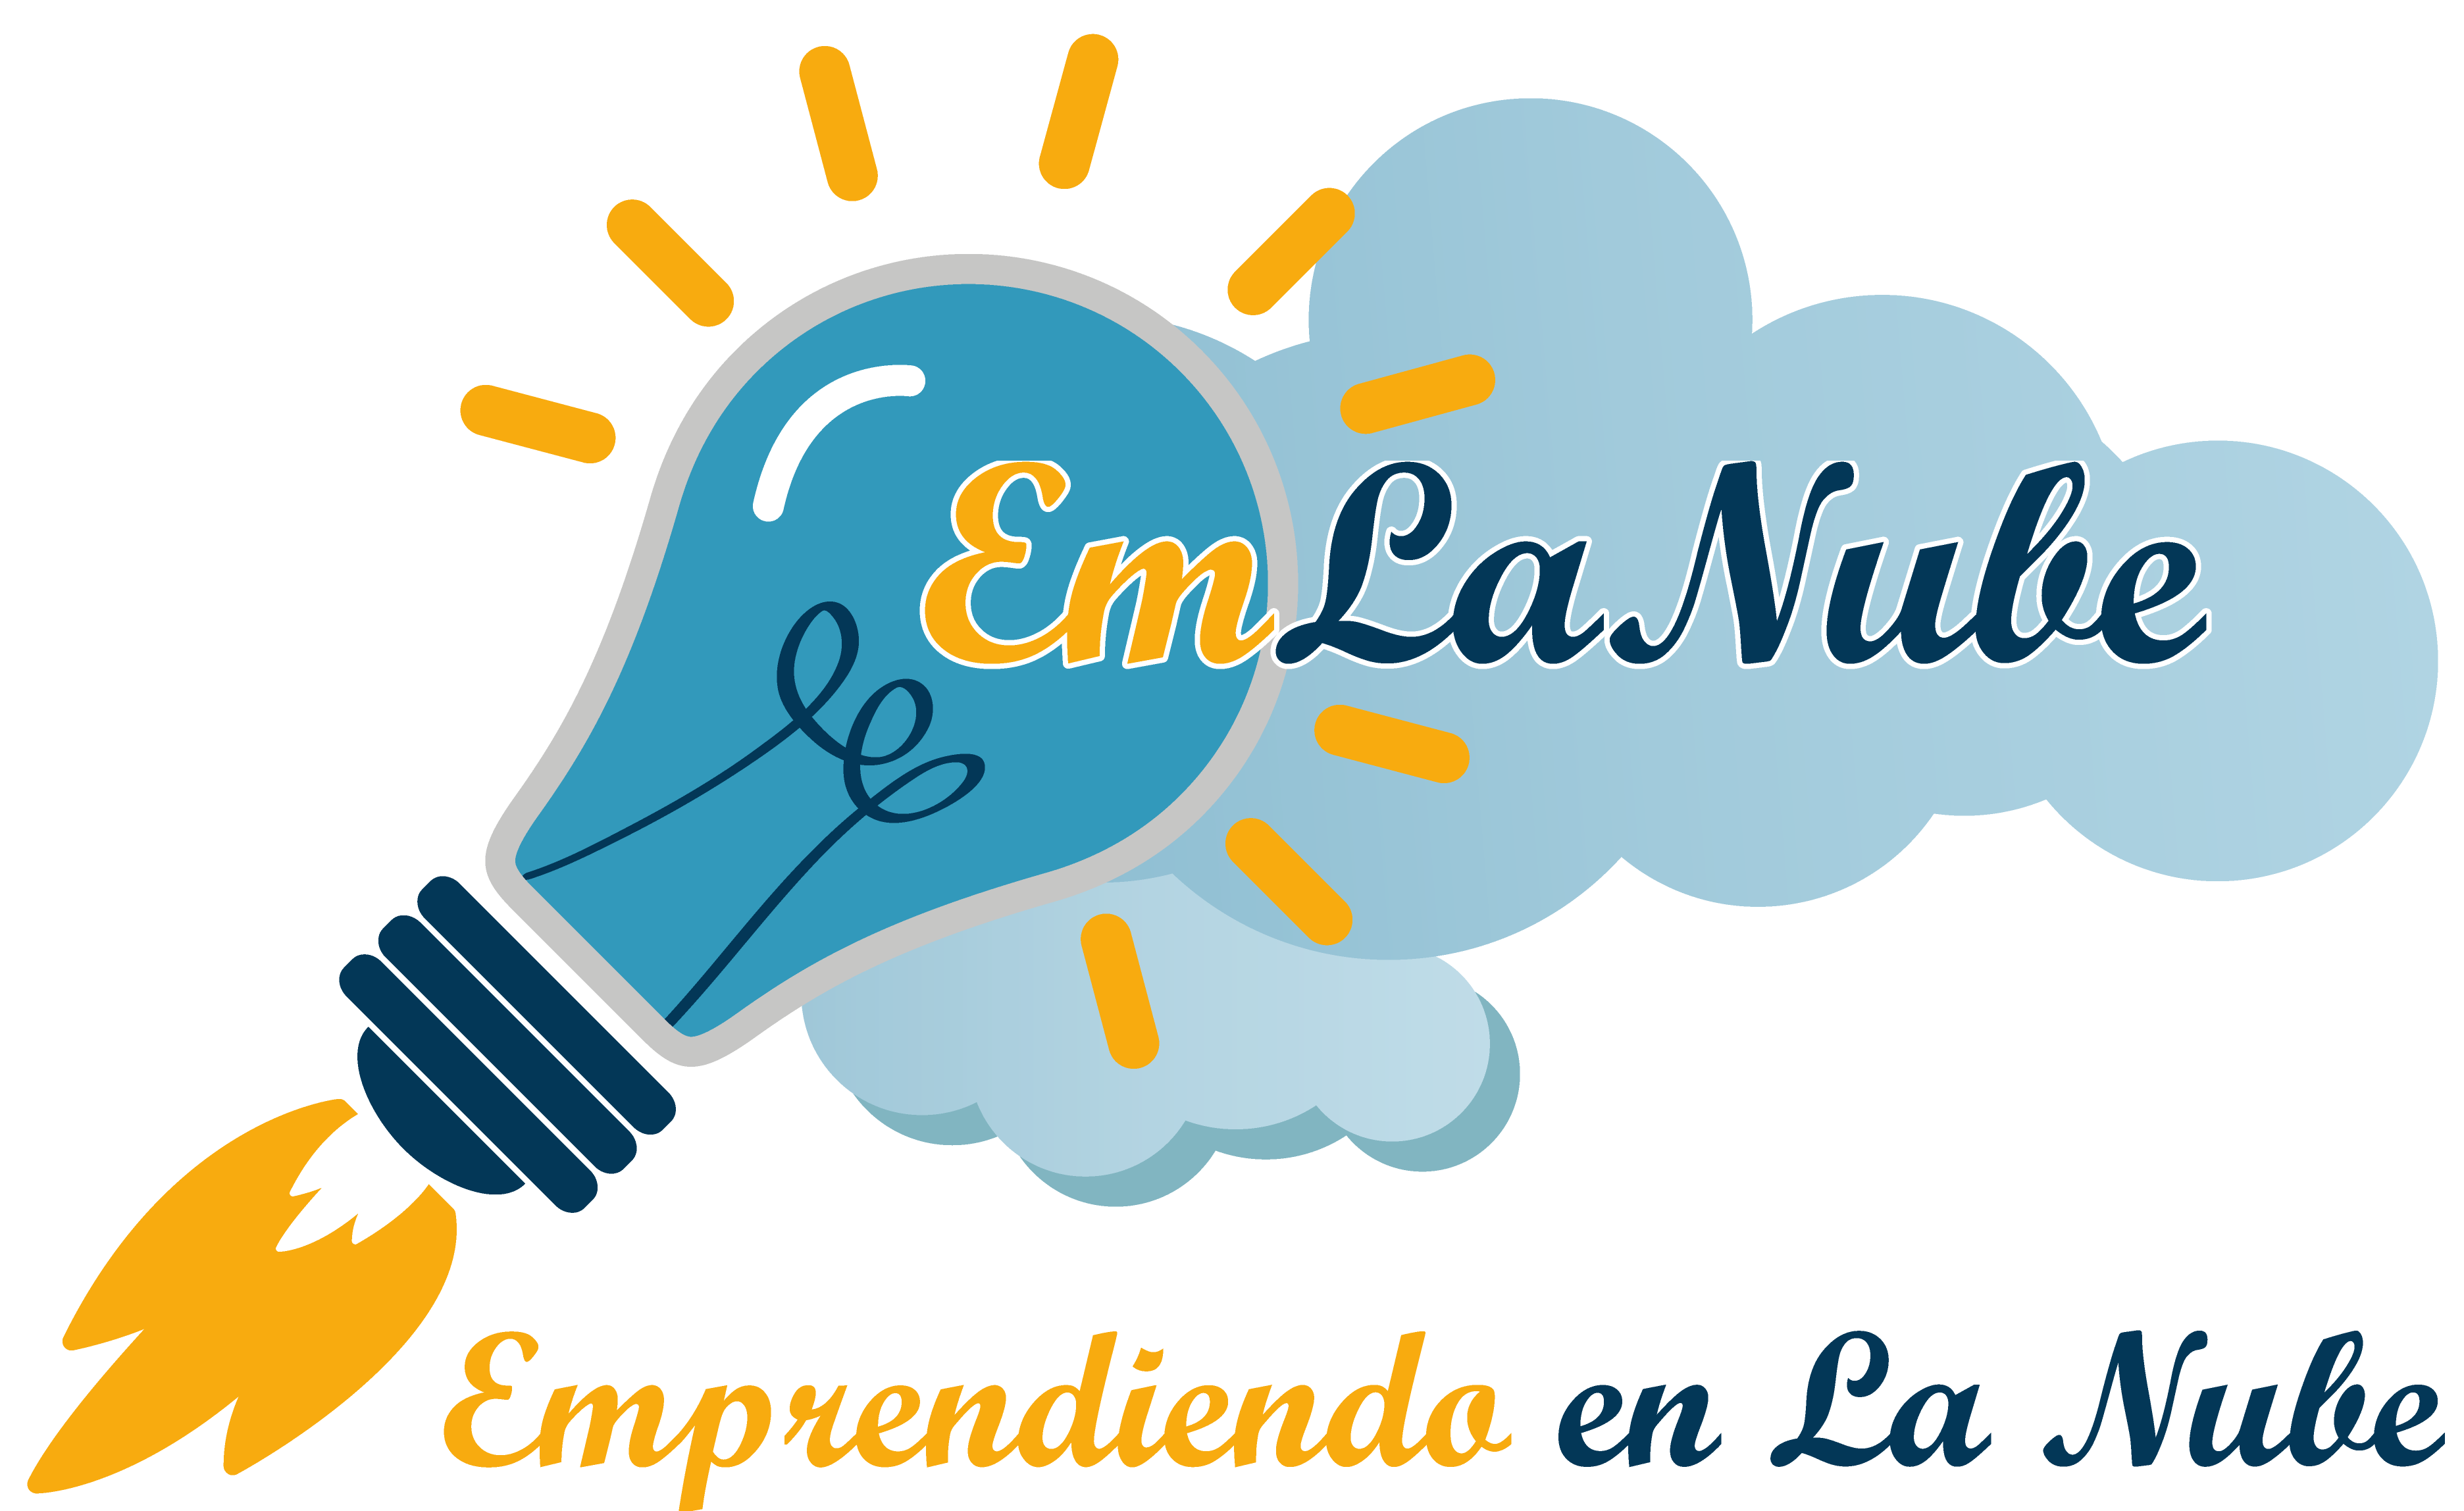 Emprendiendo en La Nube (EmLaNube)